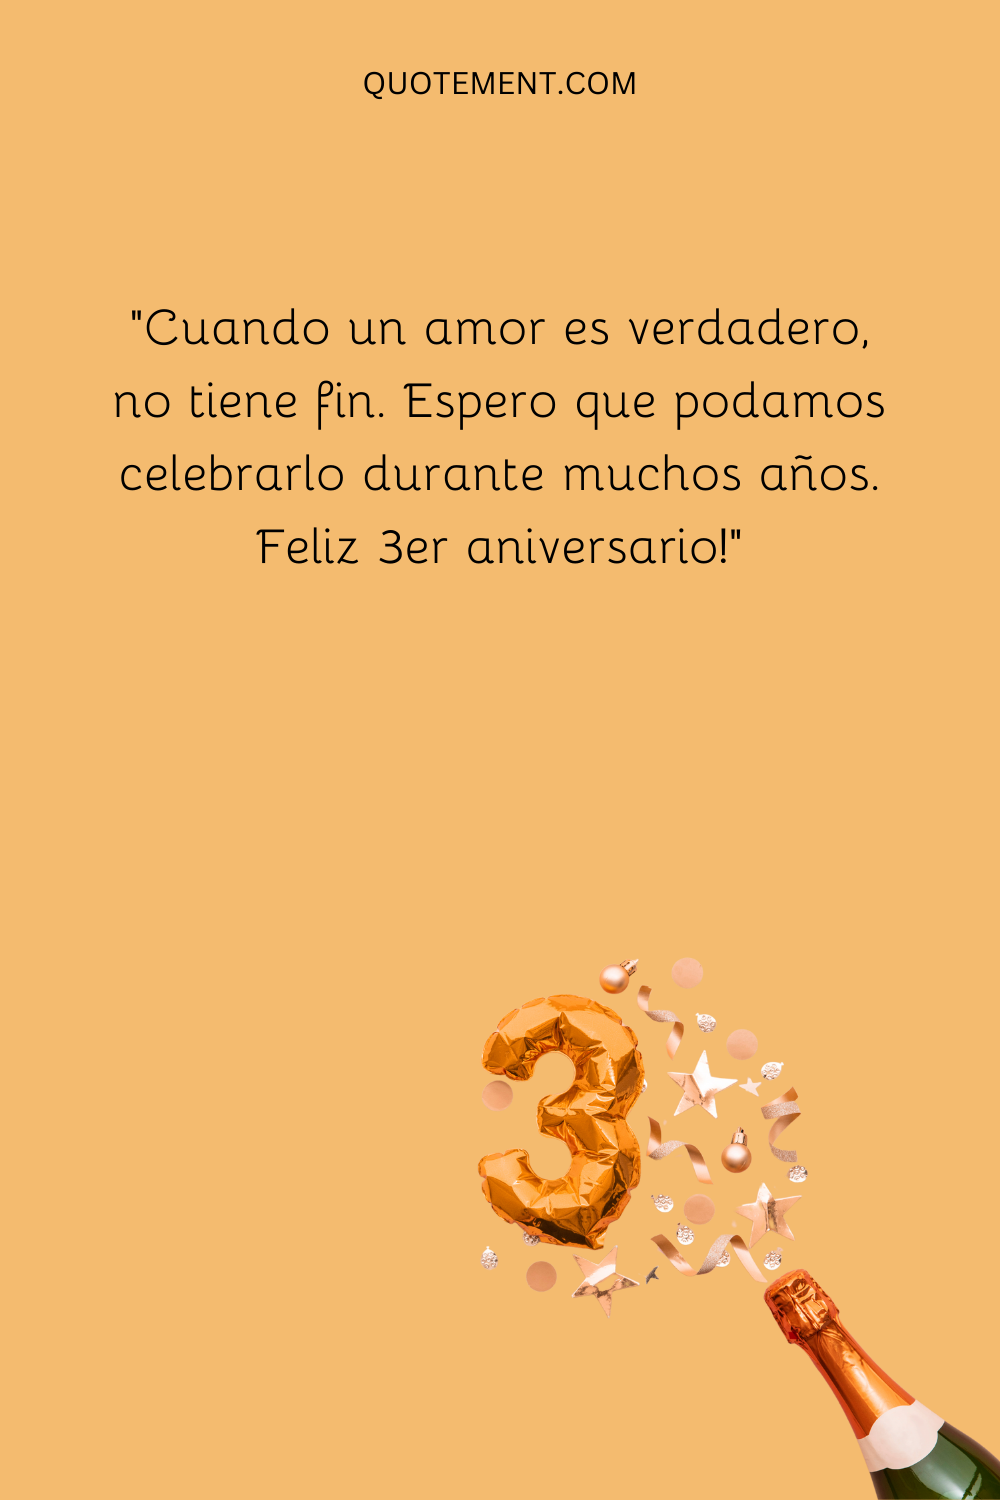 "Cuando un amor es verdadero, no tiene fin. Espero que podamos celebrarlo durante muchos años. Feliz tercer aniversario".